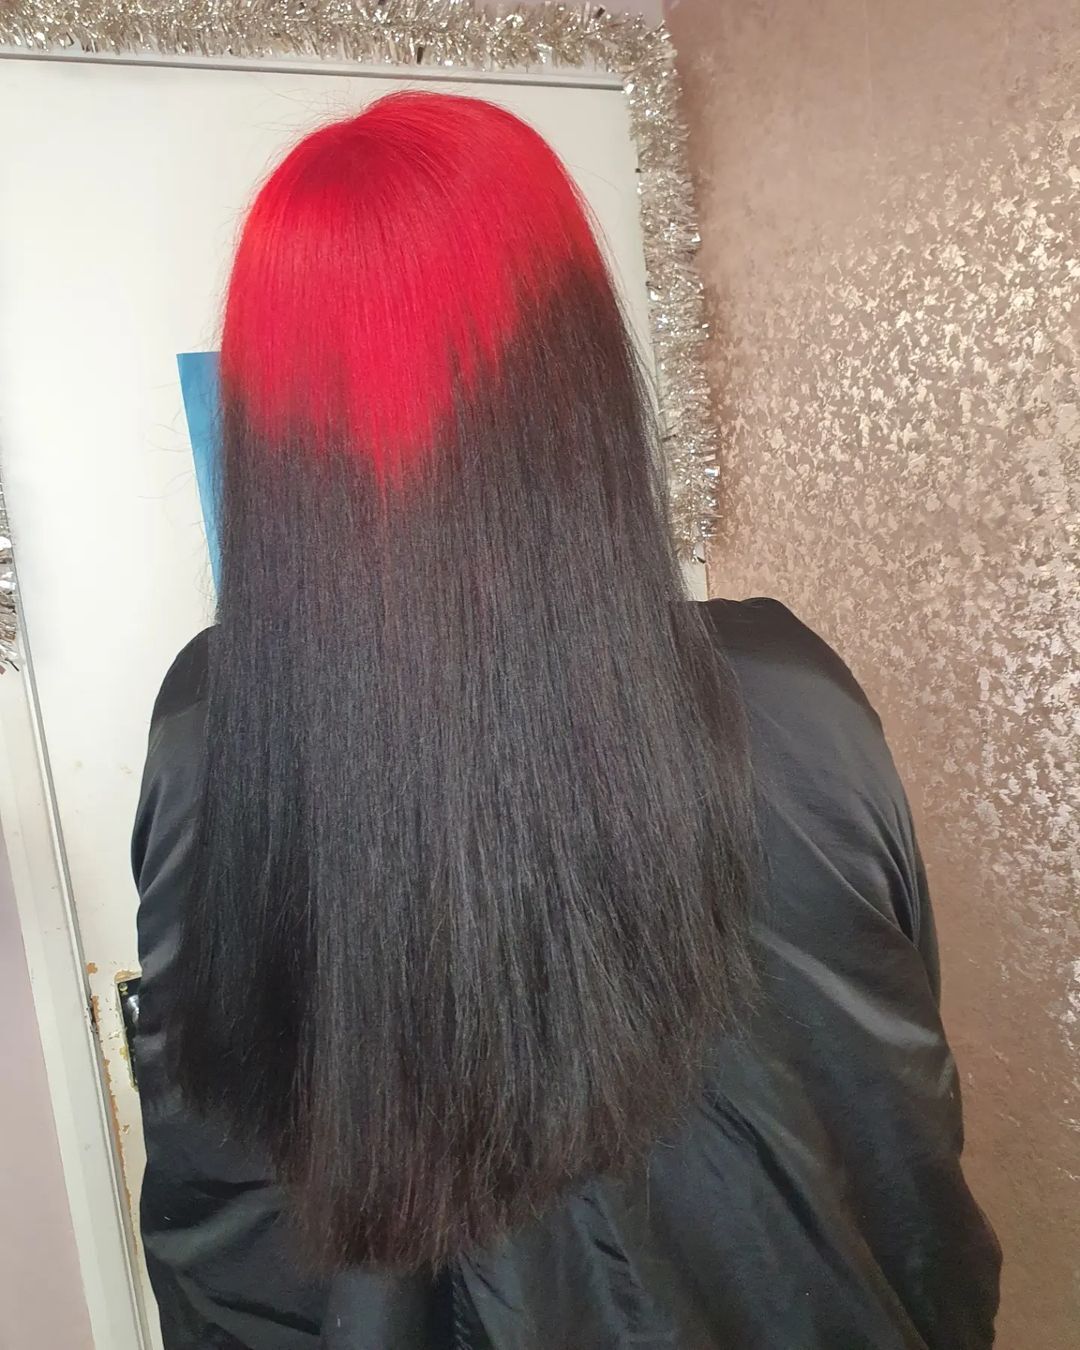 v-vormige rode wortels op zwart haar